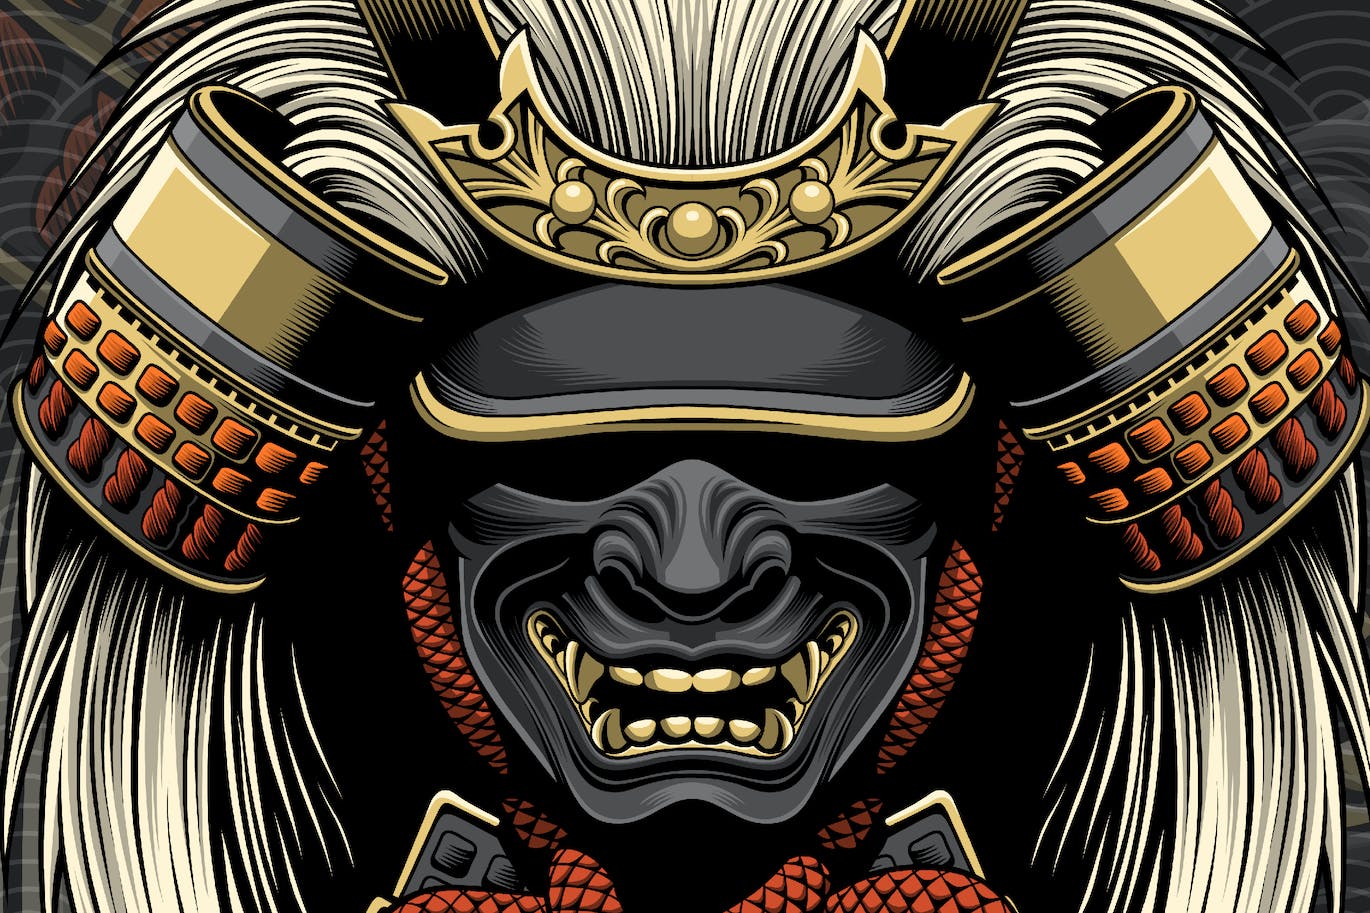 武士将军头盔和面具矢量图案素材 Samurai General Helmet and Mask-1